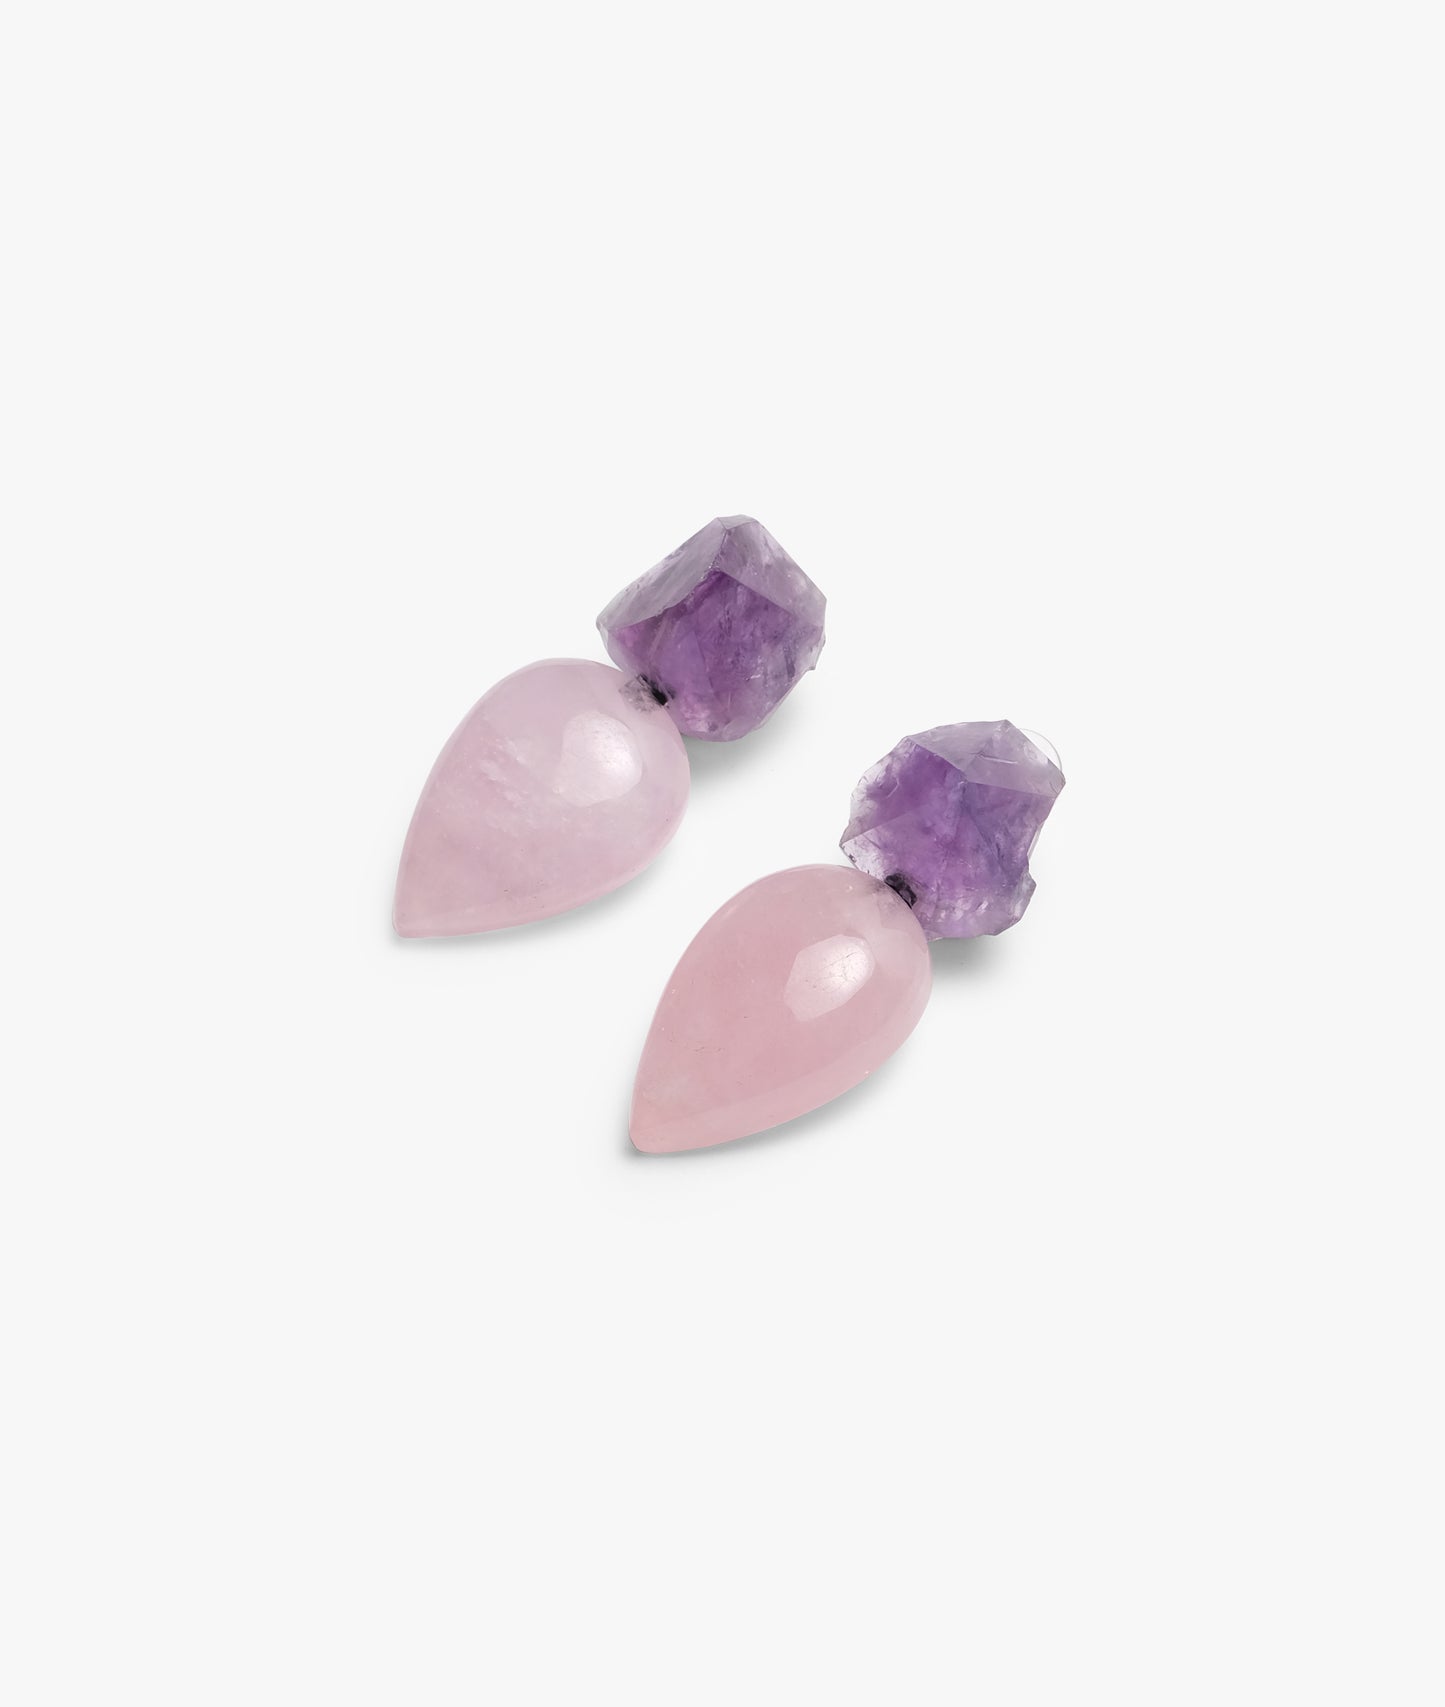 Monies Earring in amethyst and rose quartz